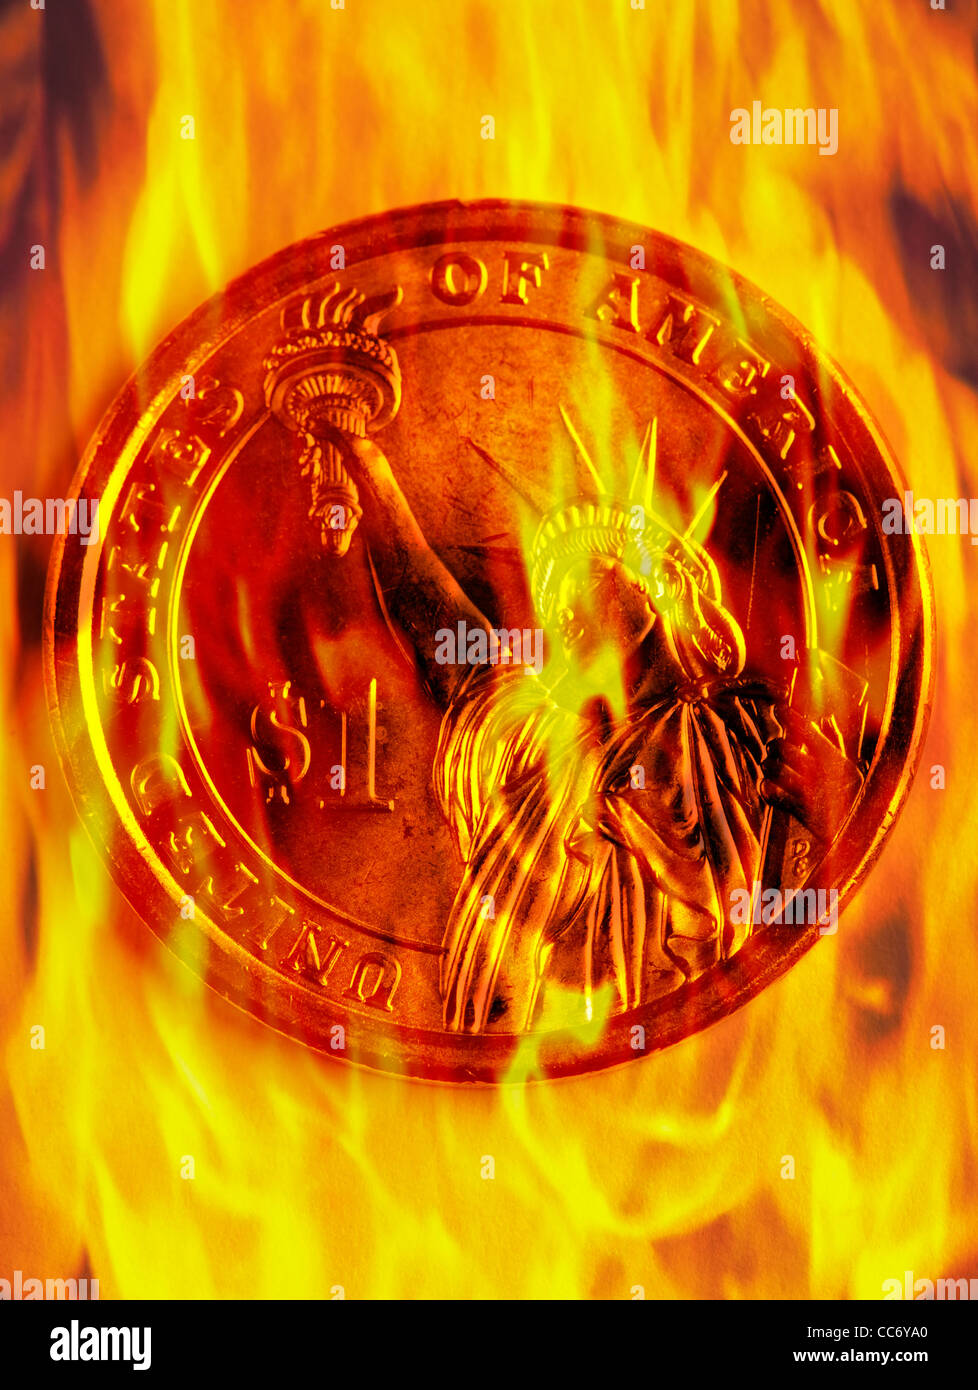 Konzept-Bild-Dollar-Münze auf Feuer mit orange Flamme brennen Stockfoto